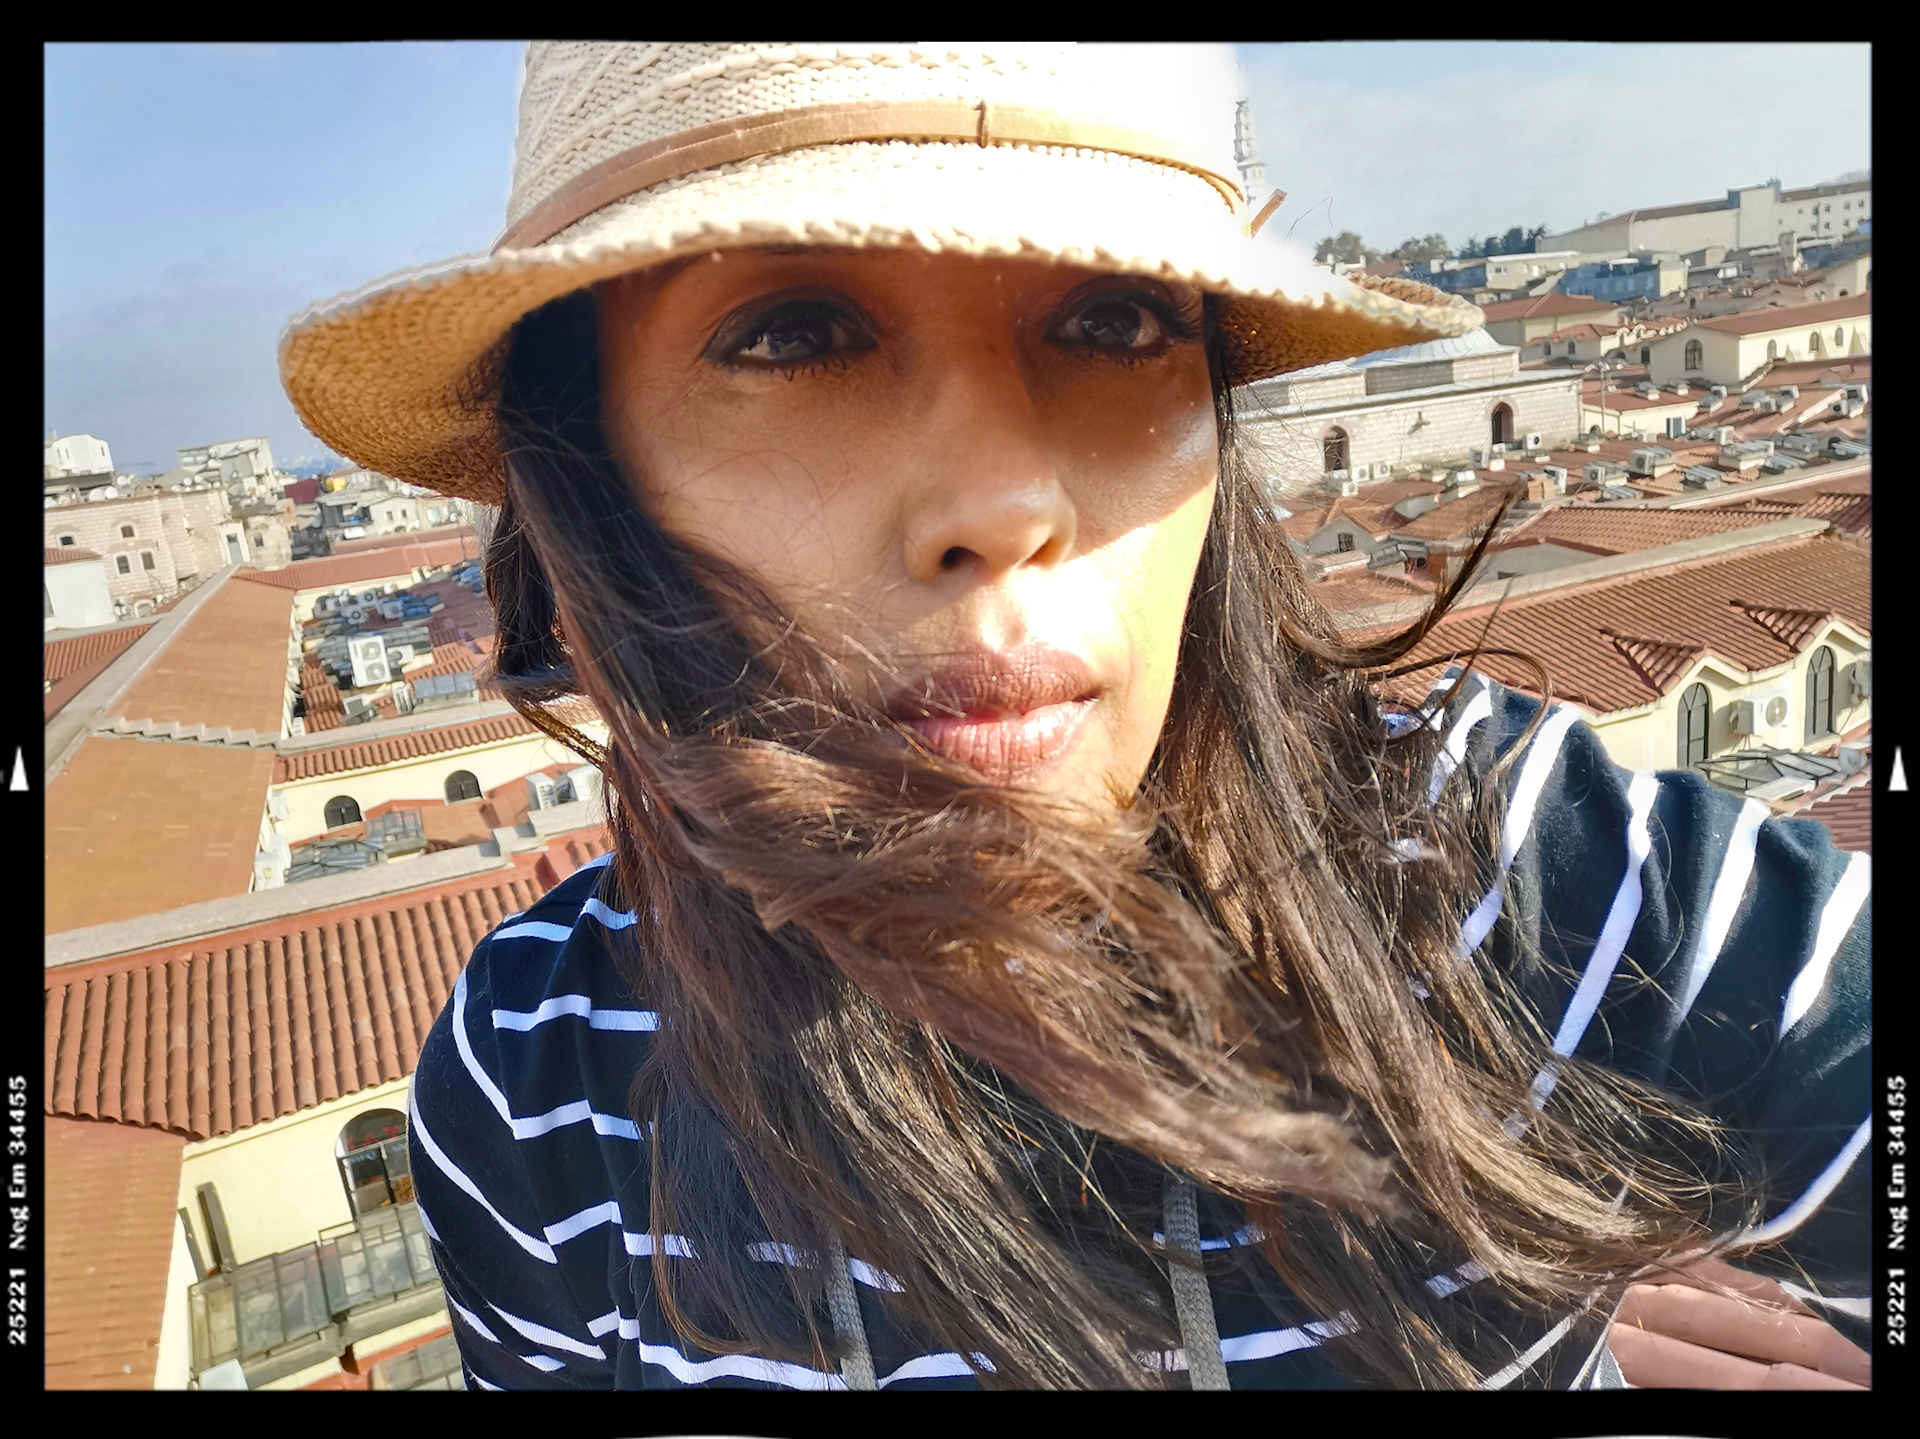 Istanbul rooftop selfie